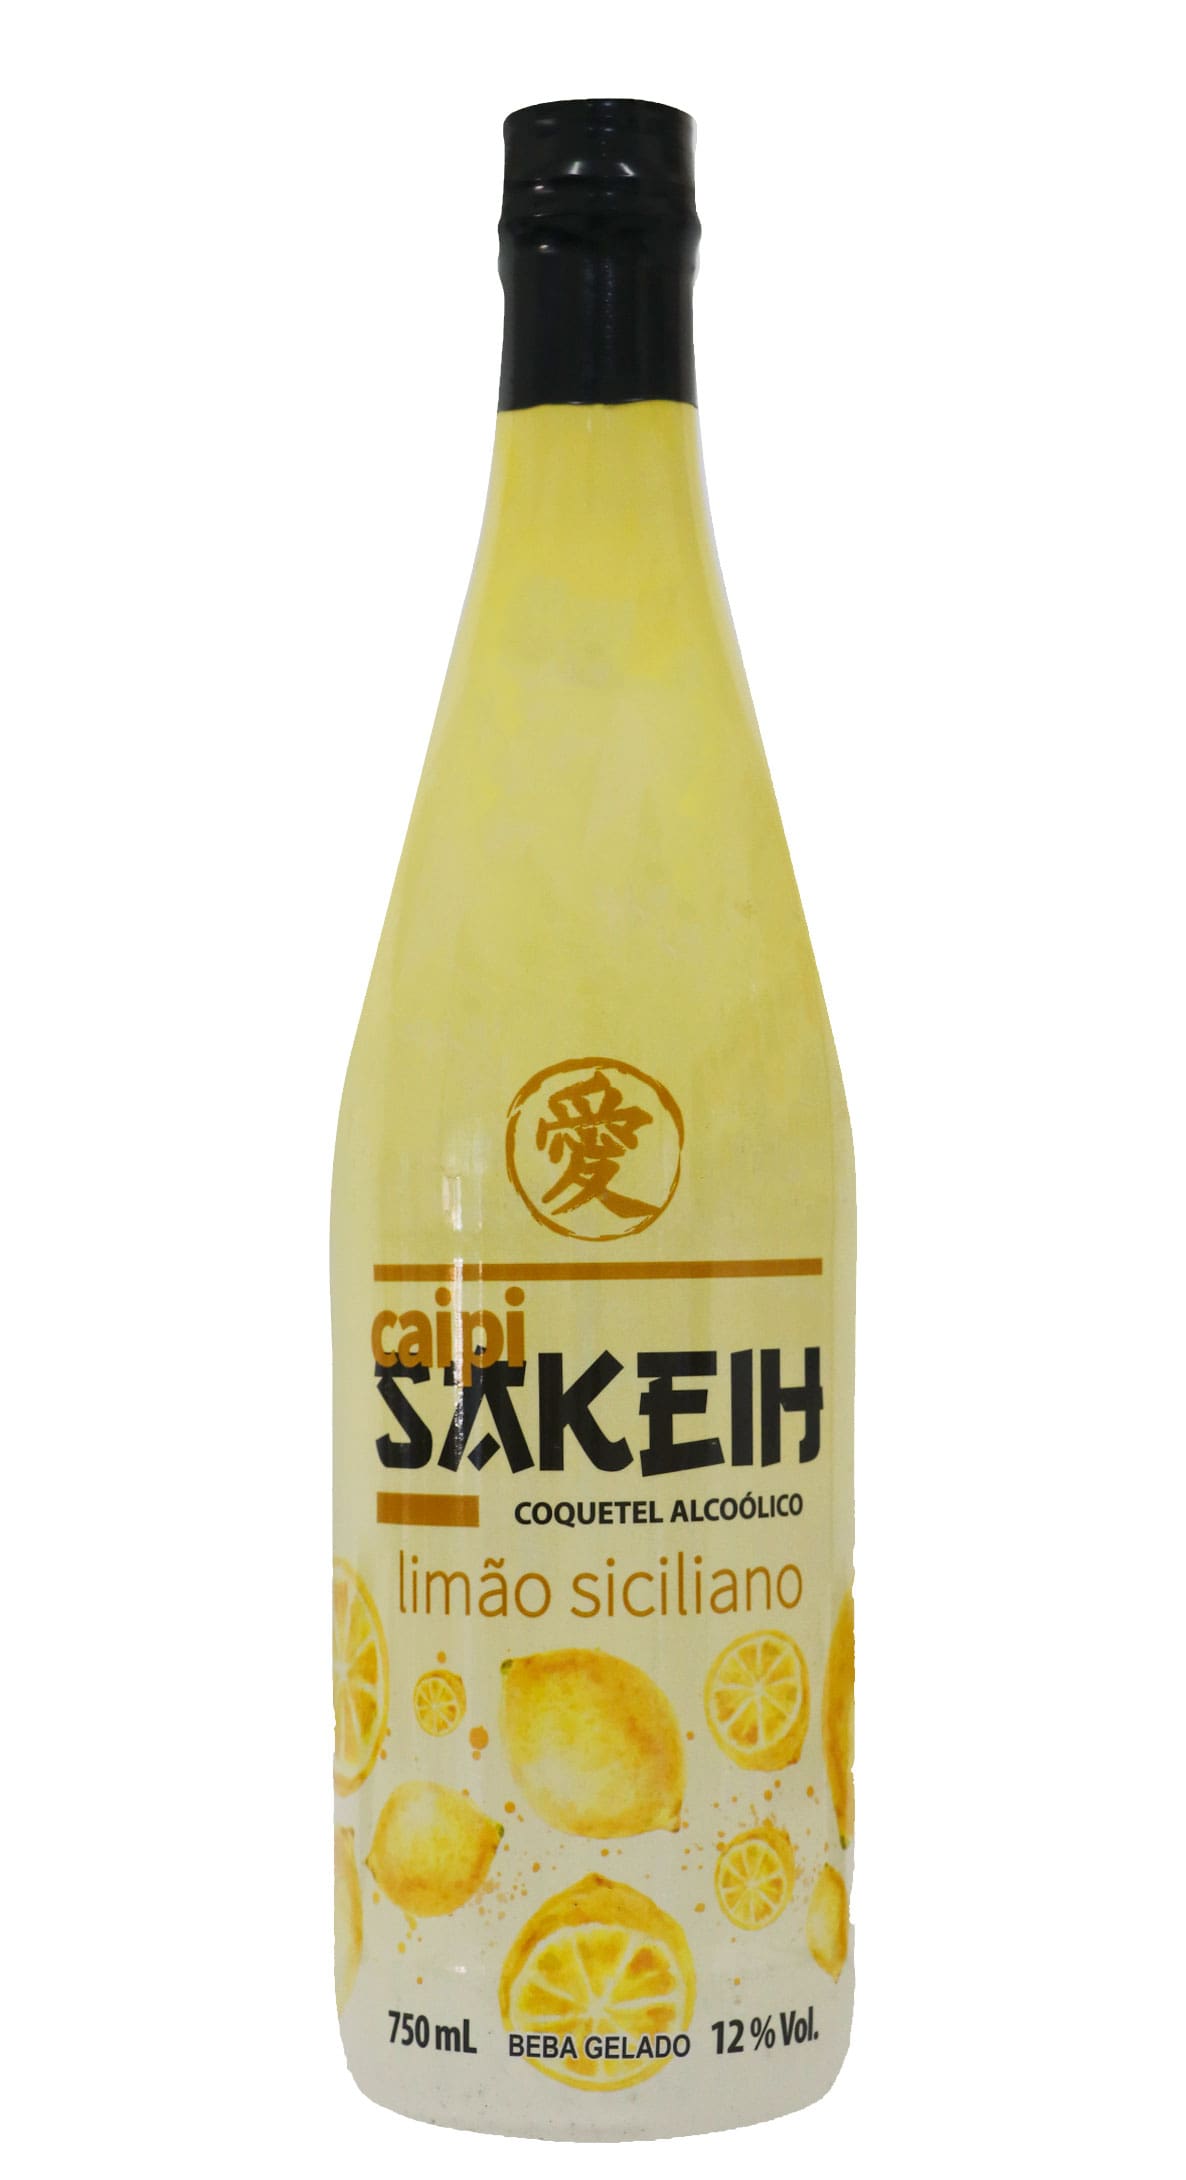 Coquetel sabor Limão Siciliano Caipisakeih garrafa 750ml no Atacado -  Atacadão